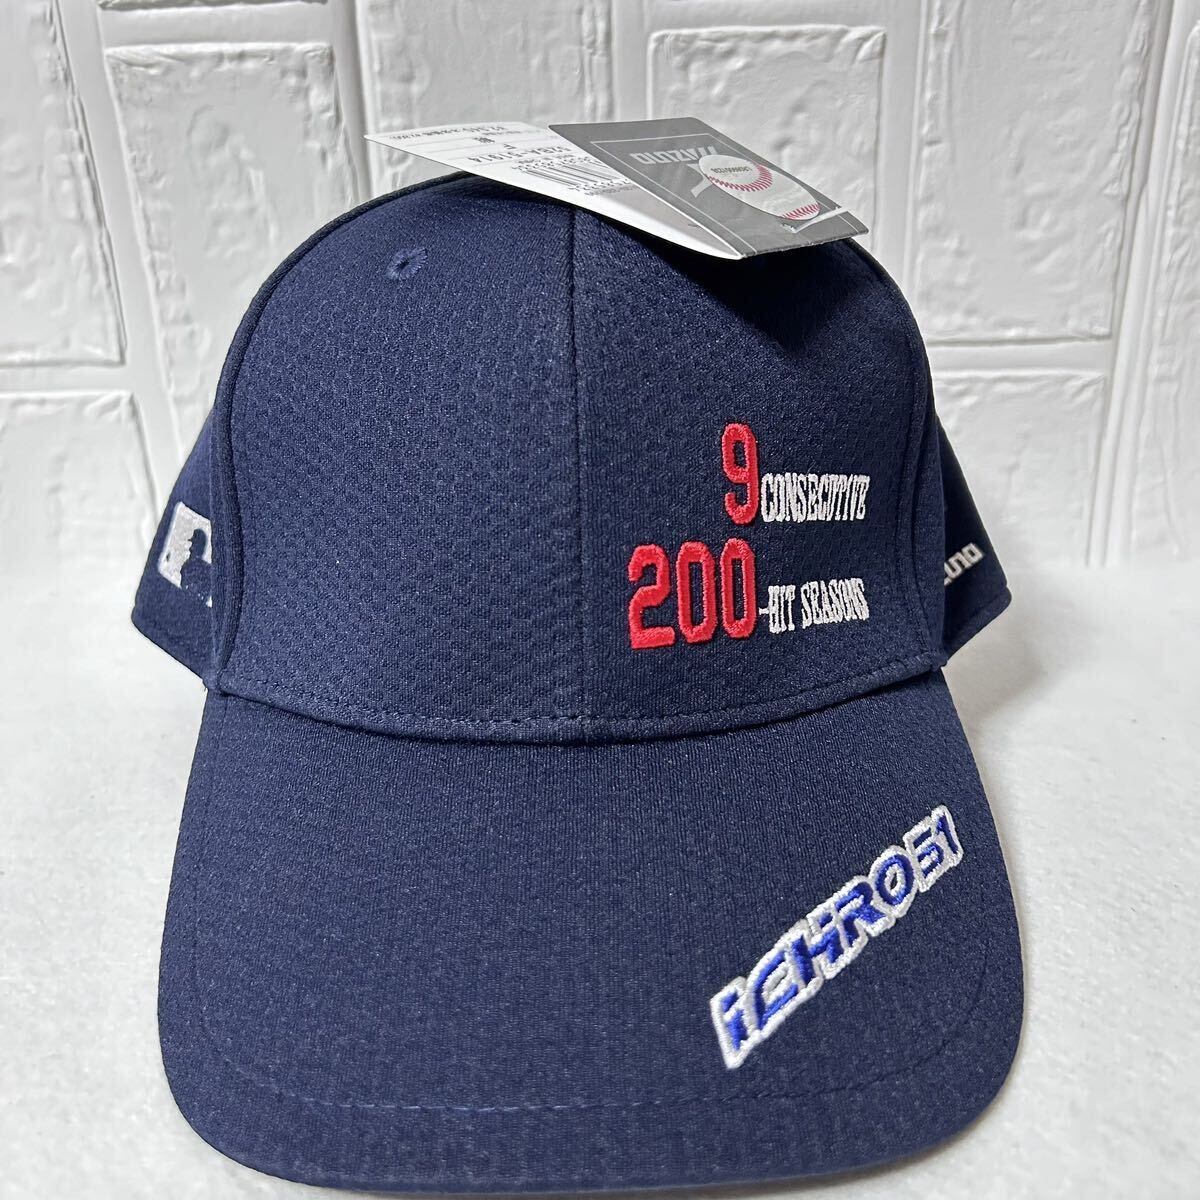 【新品 未着用】MIZUNO ICHIRO 9 CONSECUTIVE 200-HIT SEASONS CAP ミズノ イチロー 9年連続 200本安打 記念 キャップ 帽子 (送料無料)の画像1